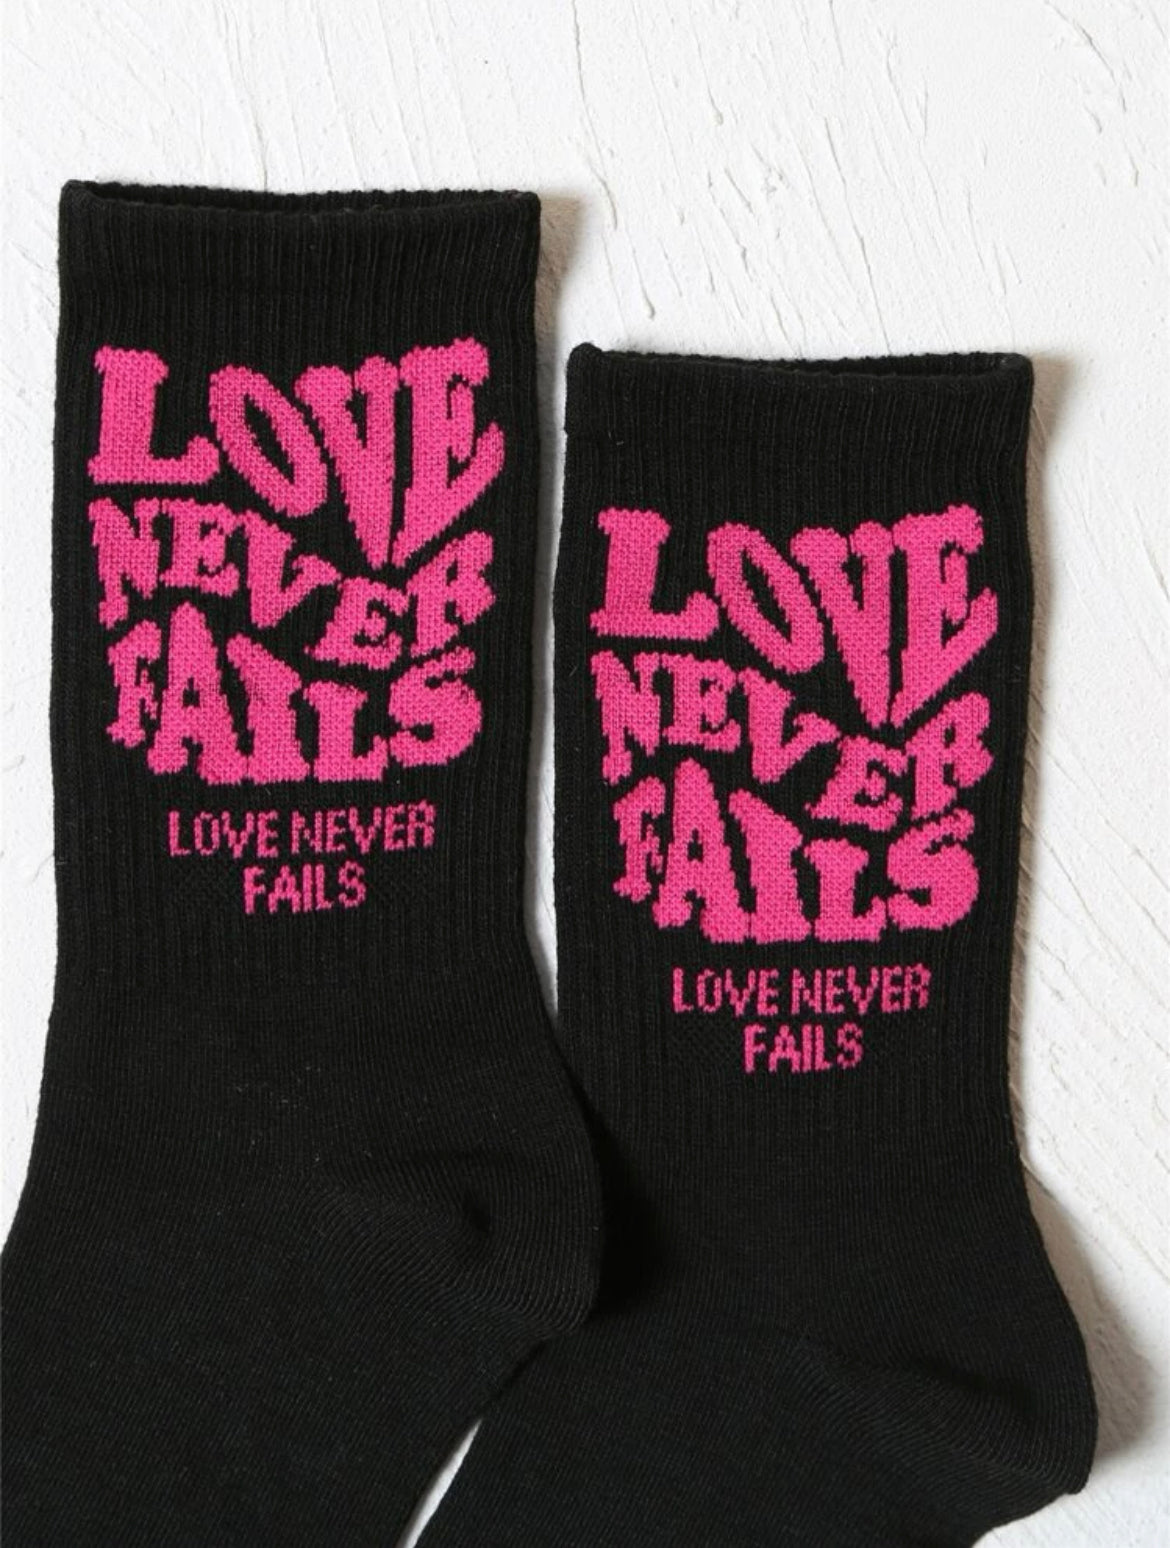 Love never fails 💗